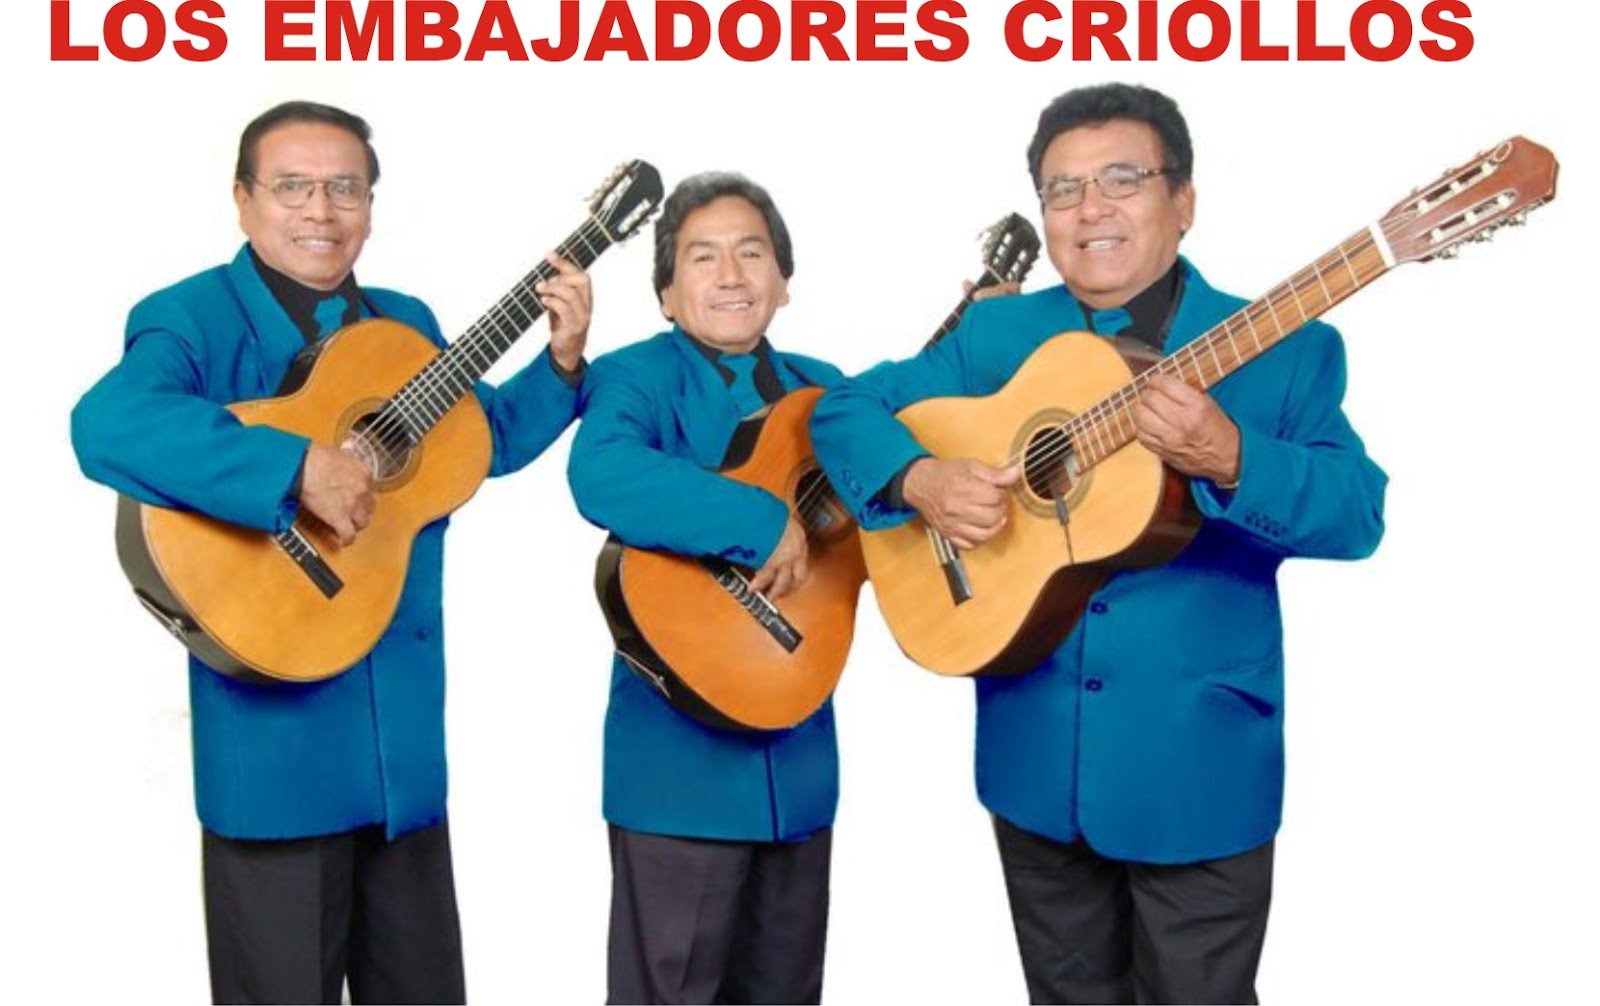 Embajadores Criollos